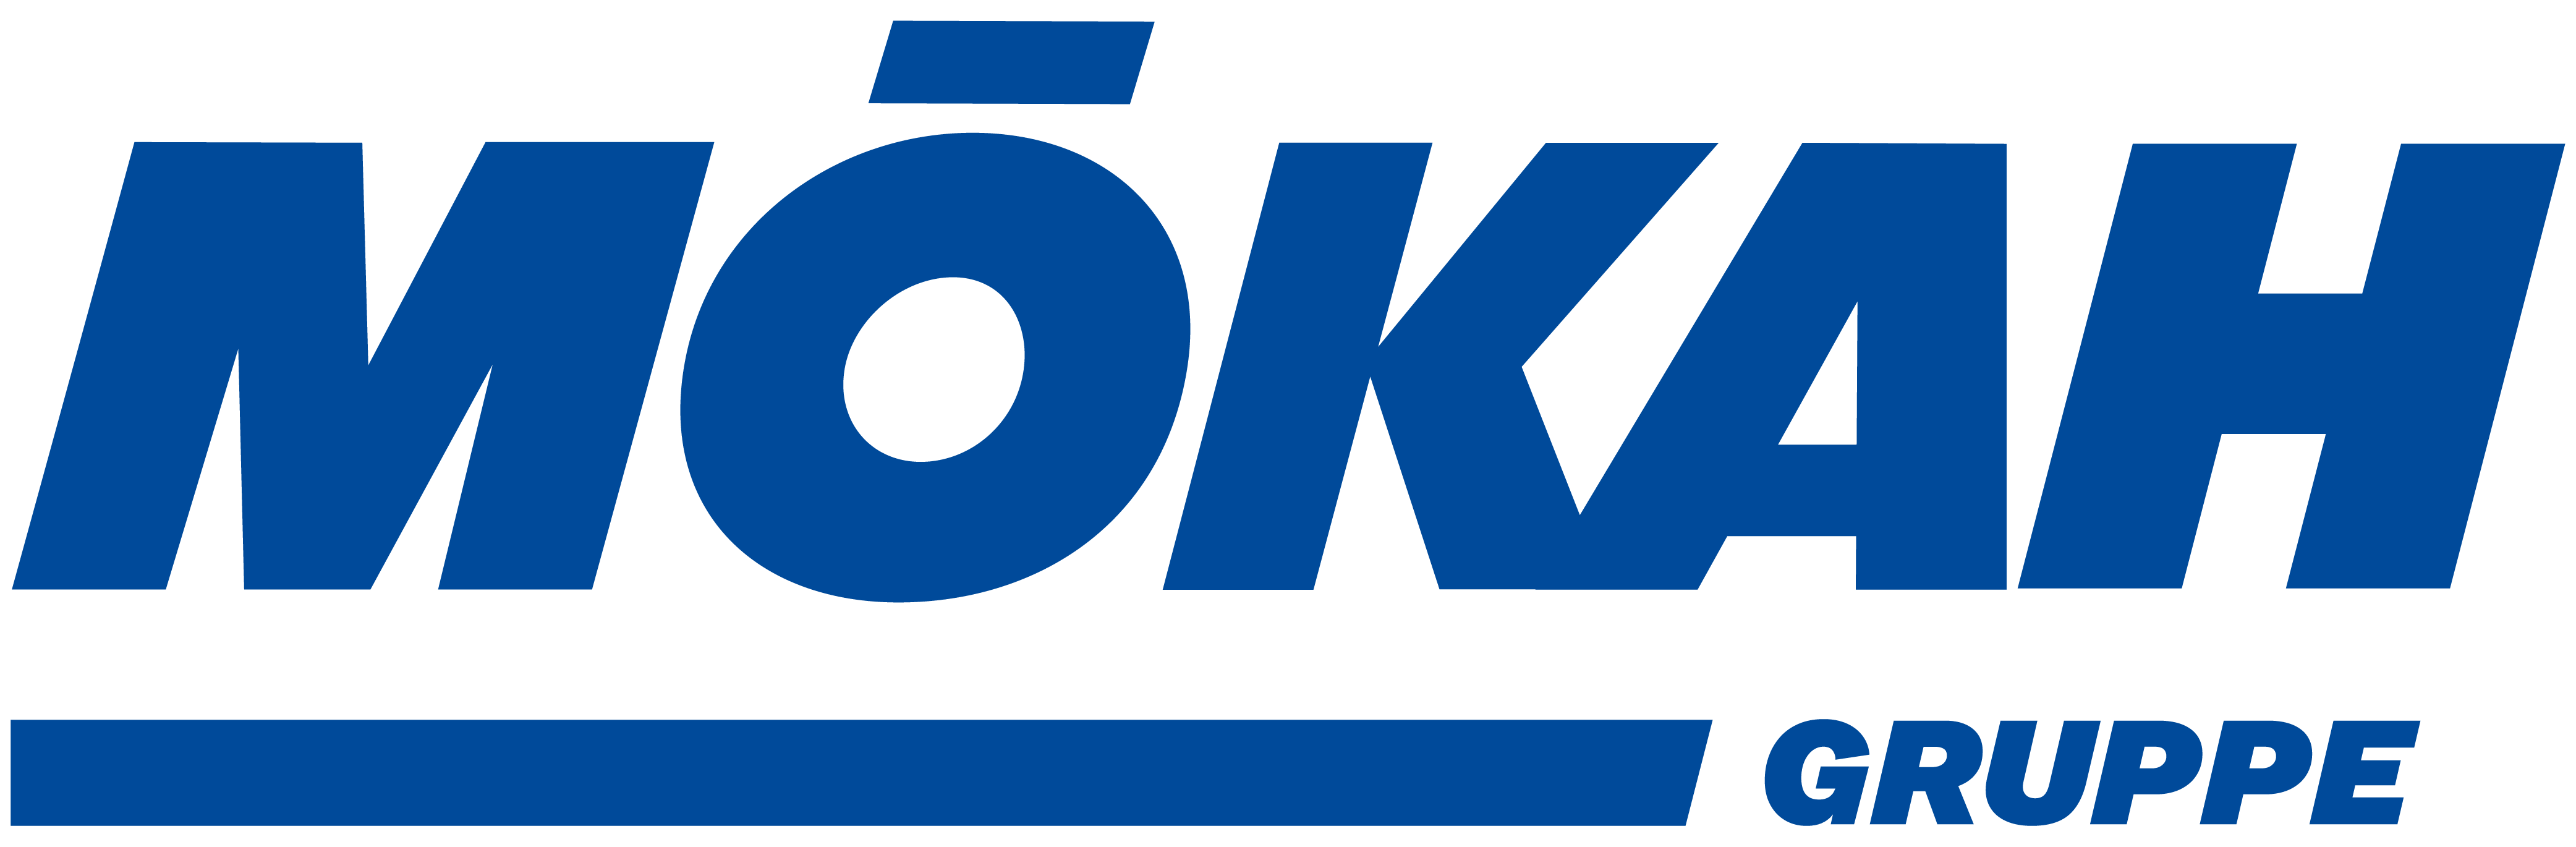 Mökah Gruppe Logo